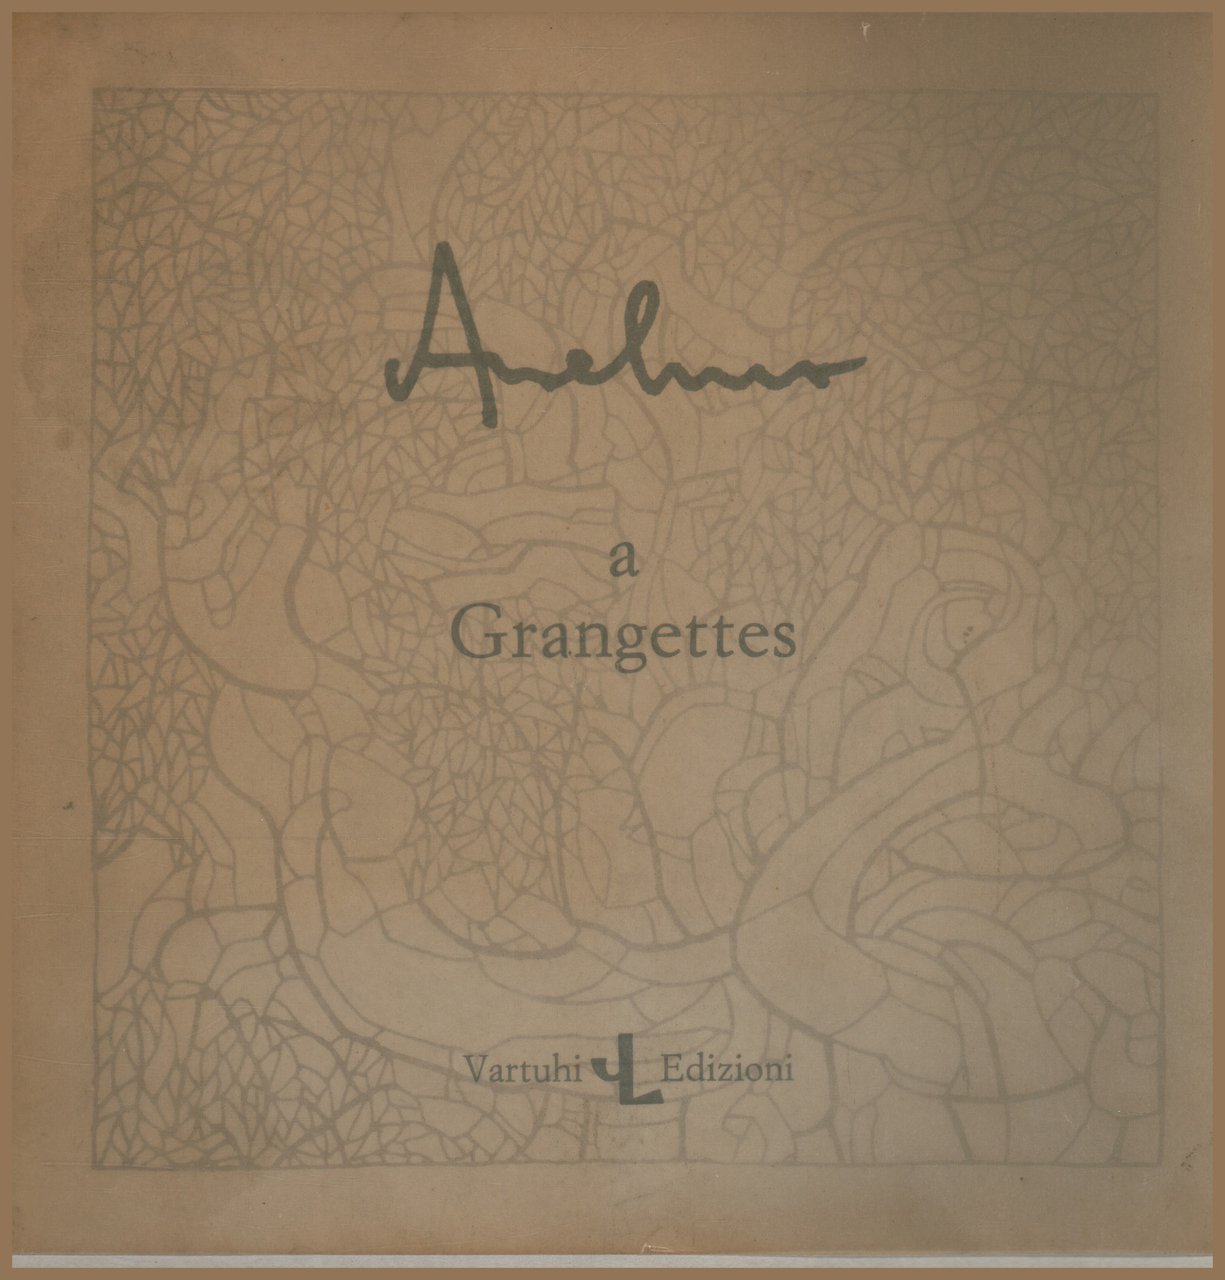 Anselmo a Grangettes